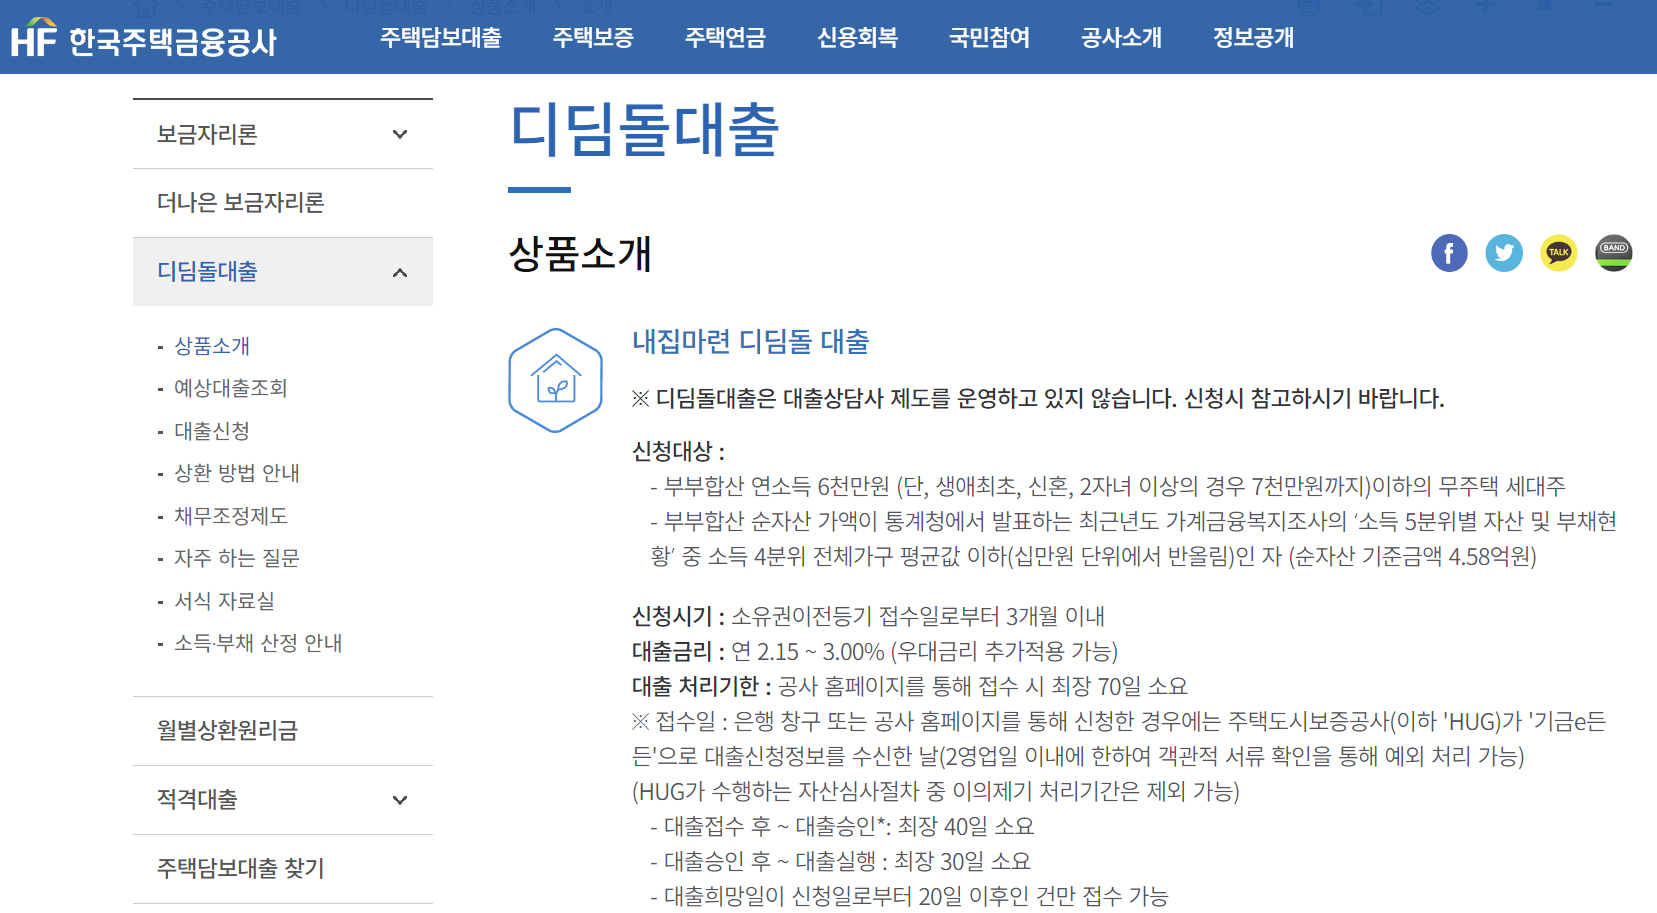 HF한국주택금융공사 홈페이지